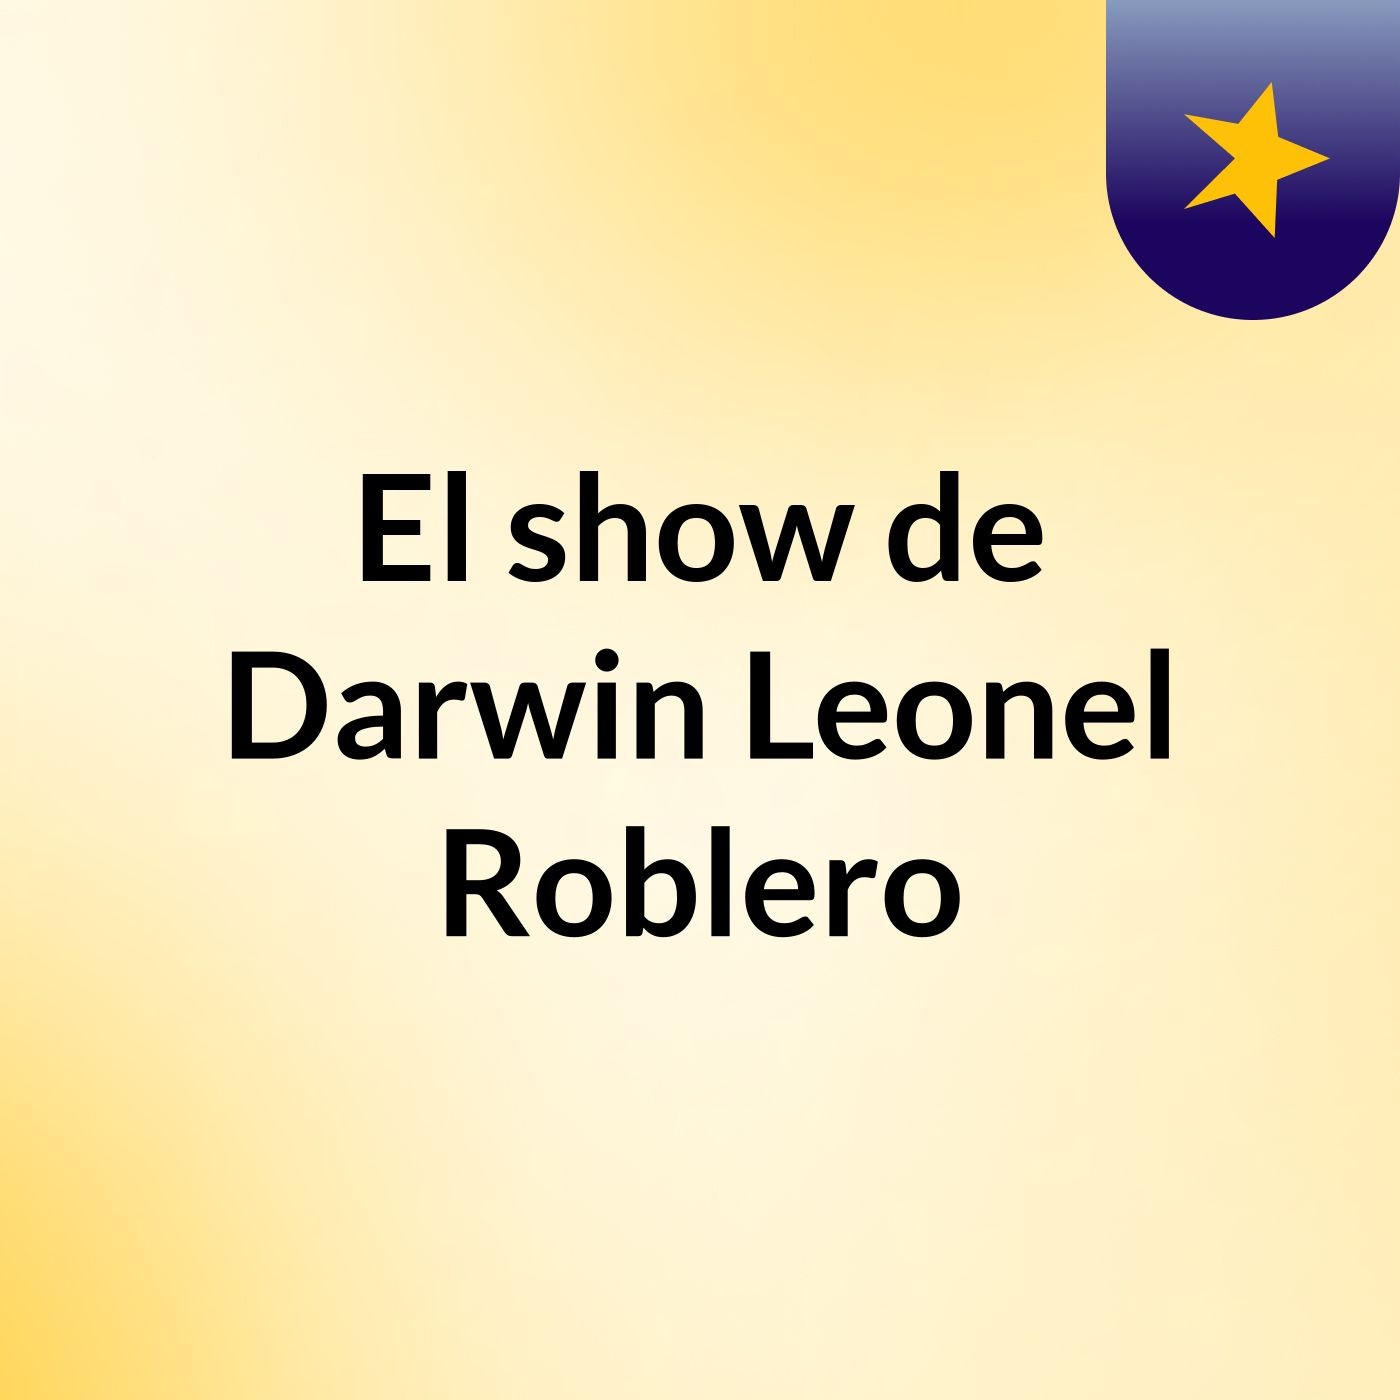 Episodio 2 - El show de Darwin Leonel Roblero